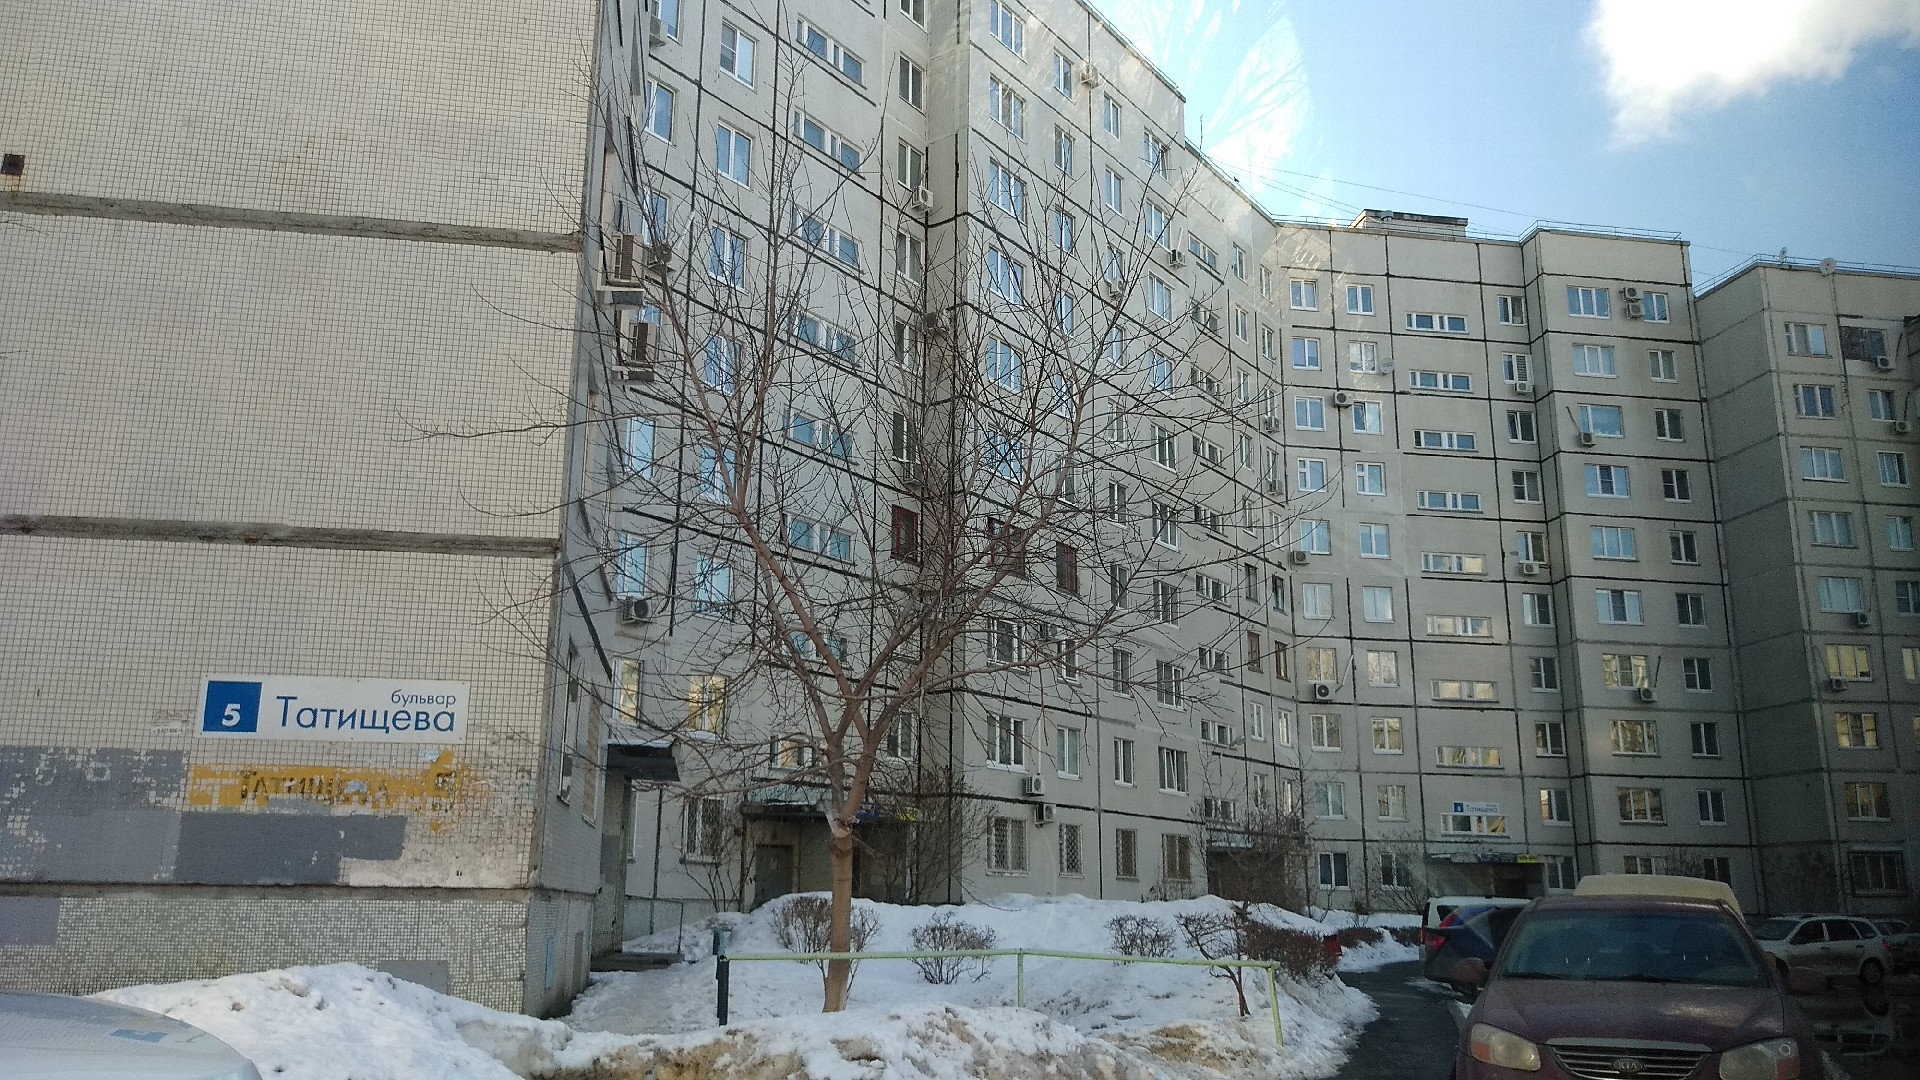 обл. Самарская, г. Тольятти, б-р. Татищева, д. 5-фасад здания